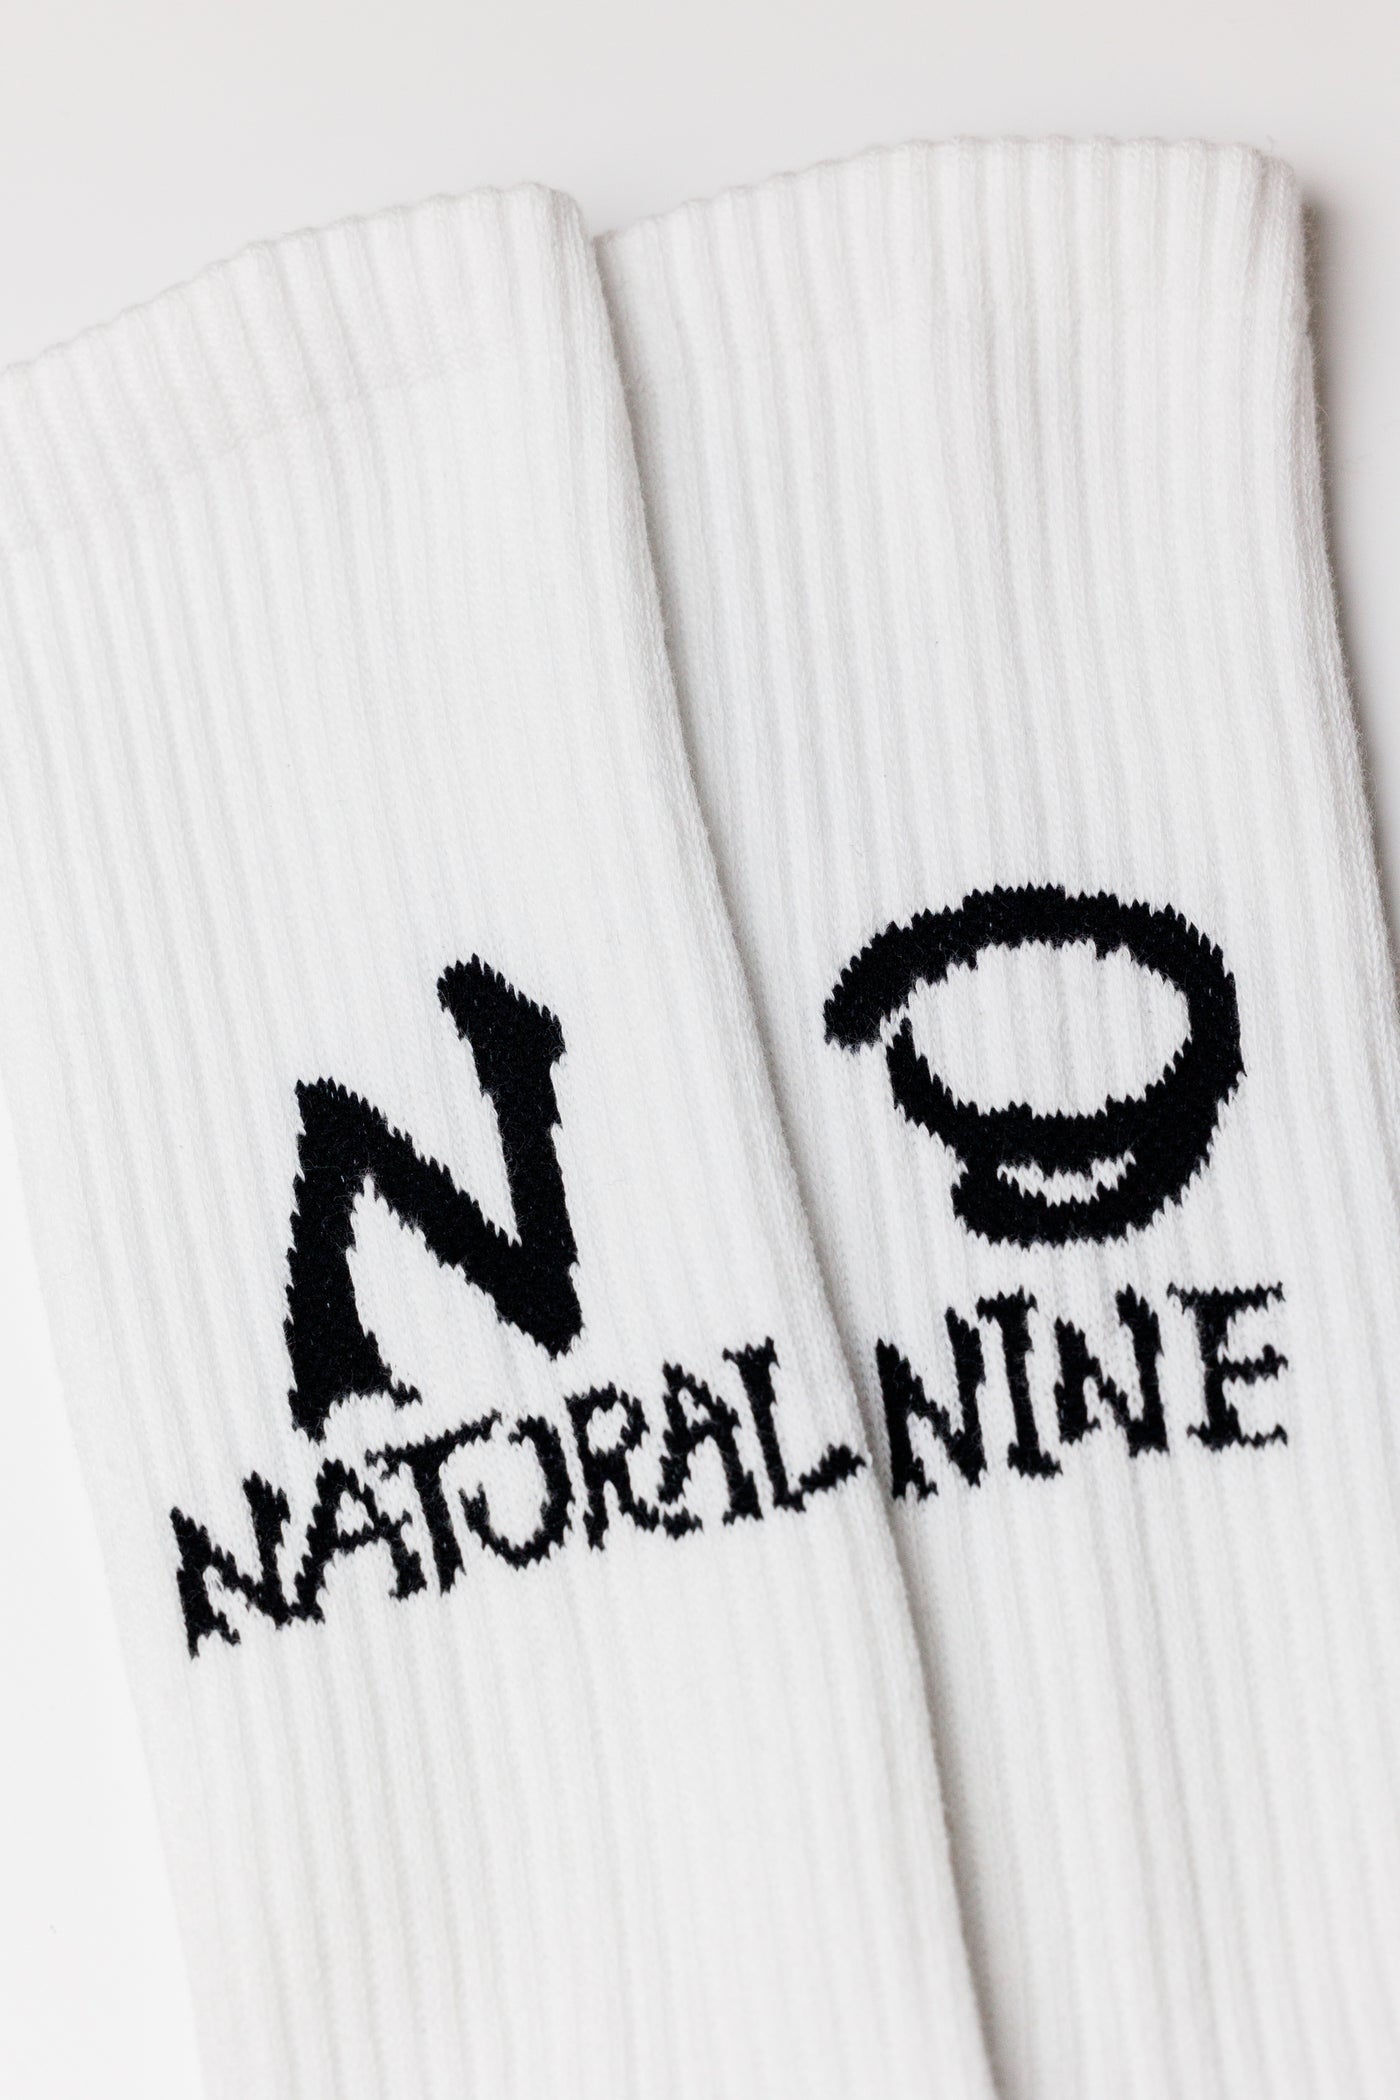 NATURAL9 collaboration socks